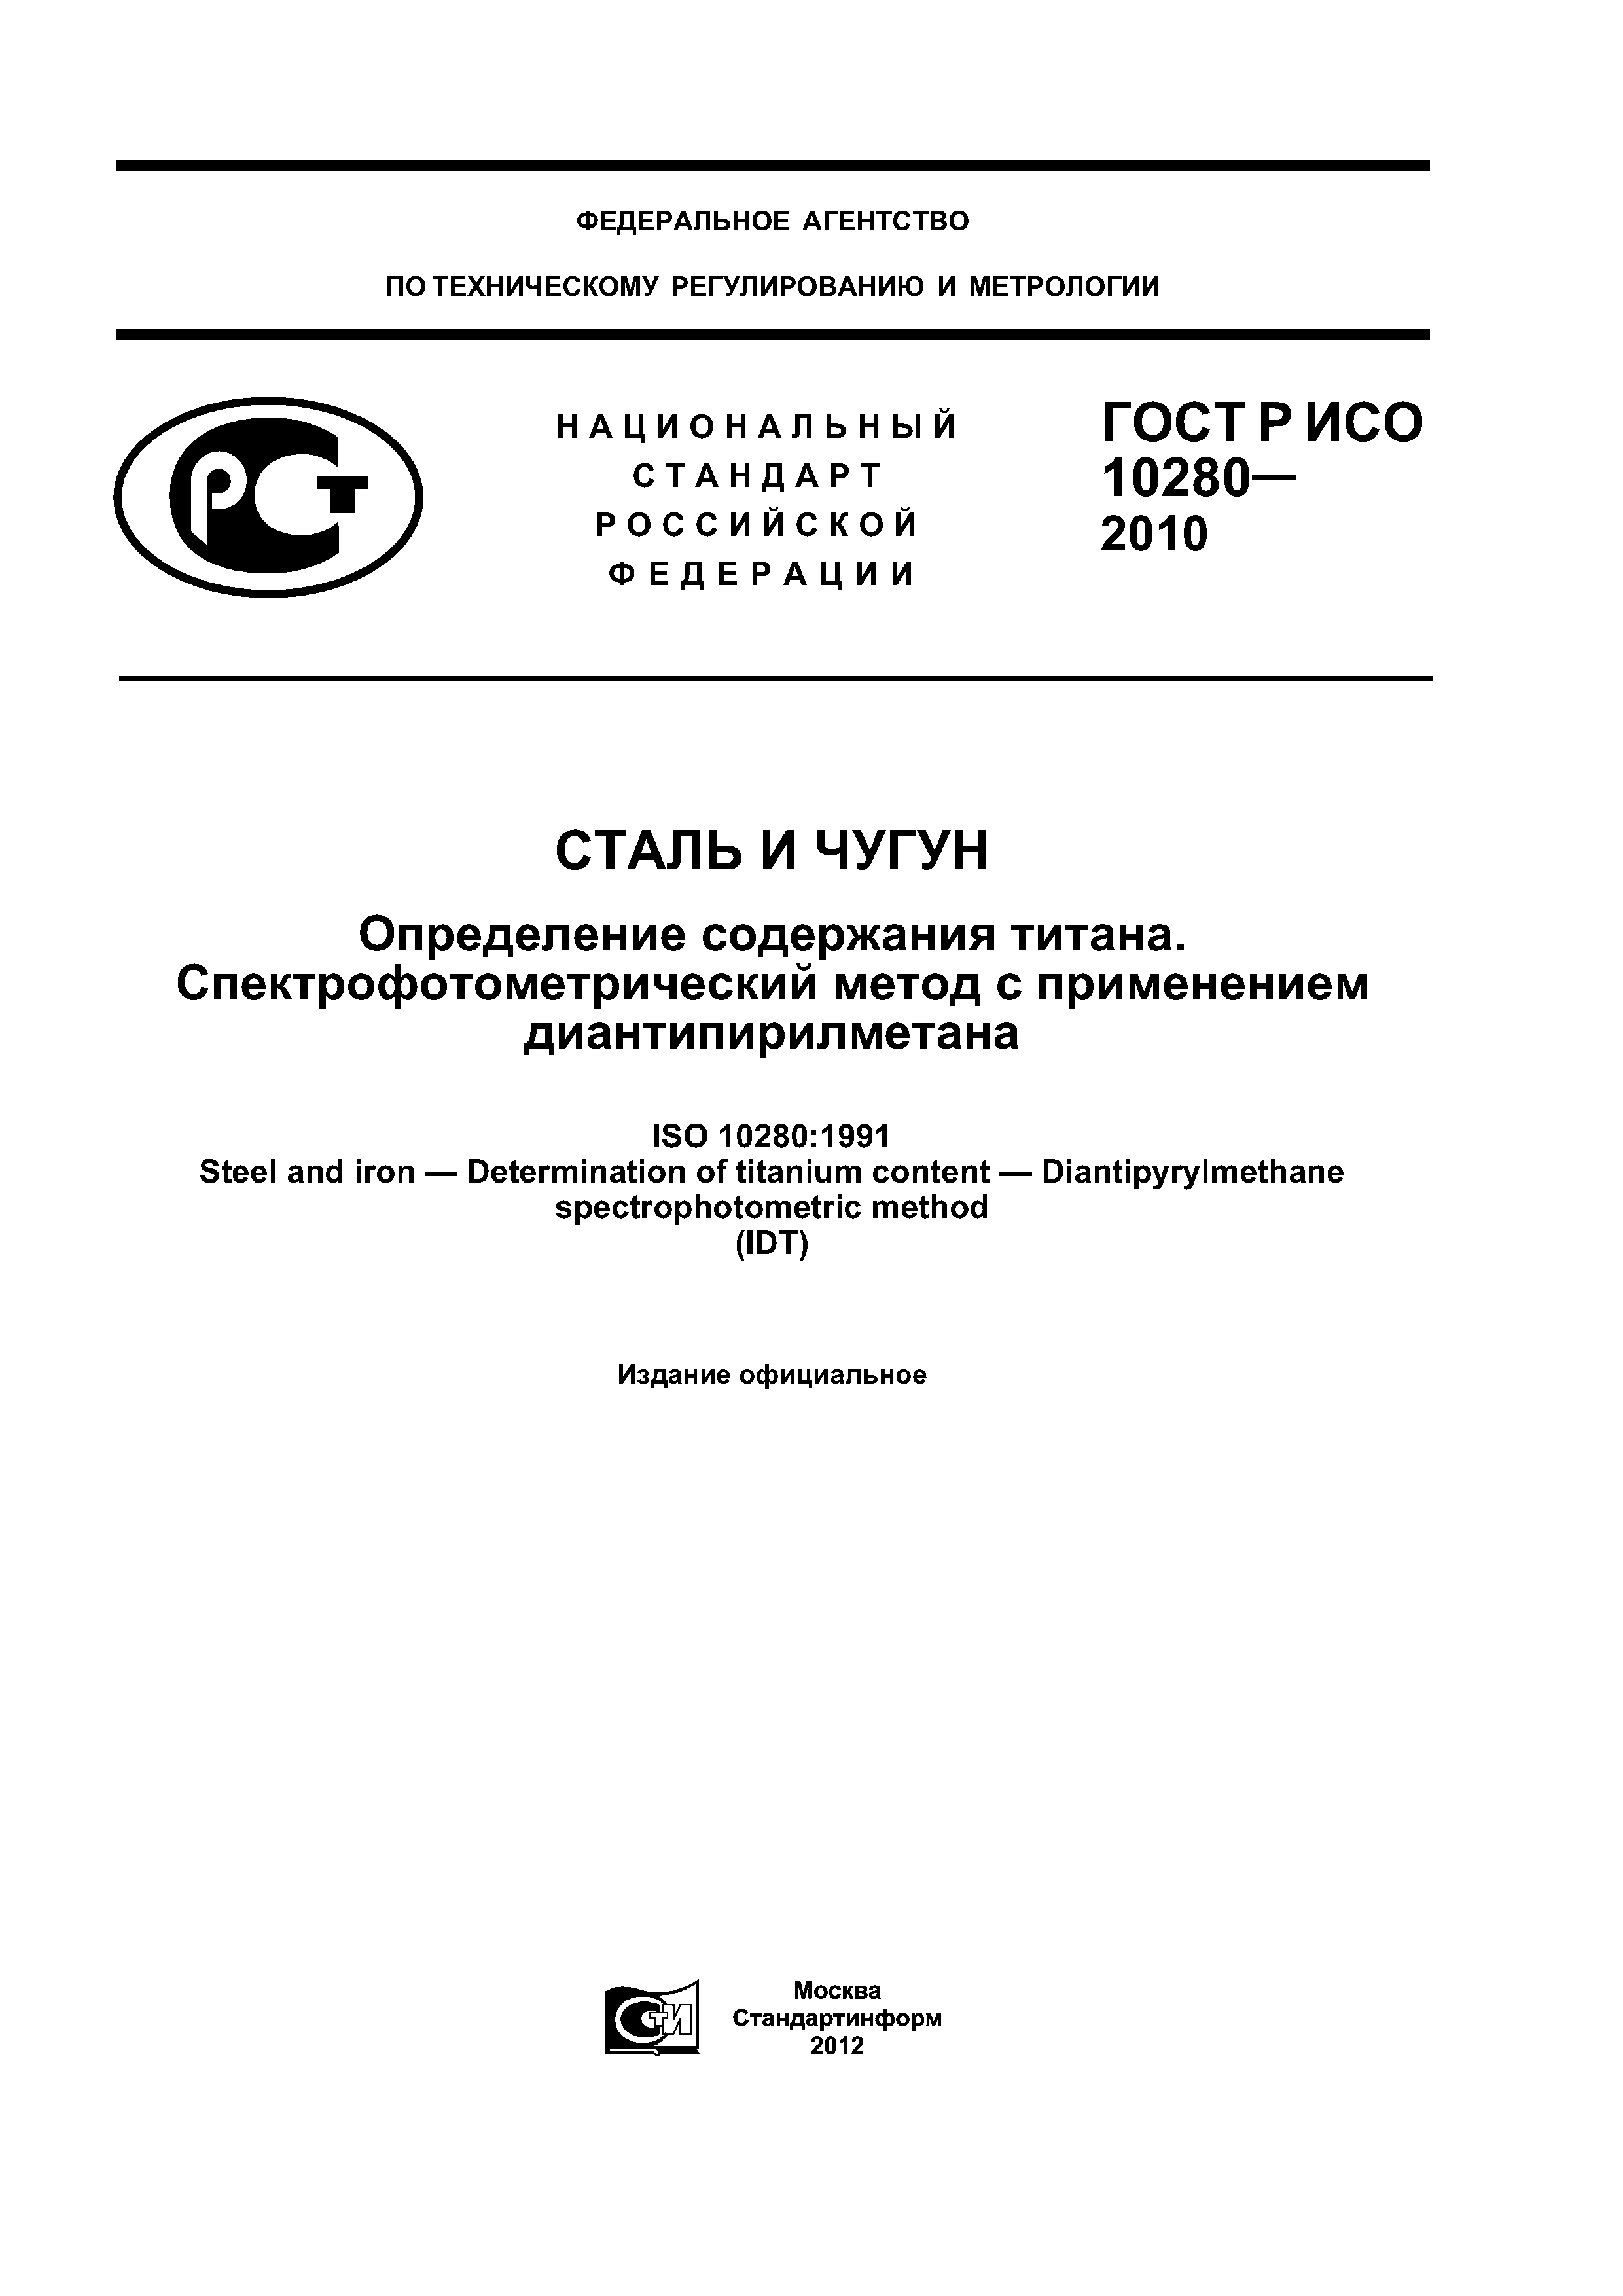 ГОСТ Р ИСО 10280-2010